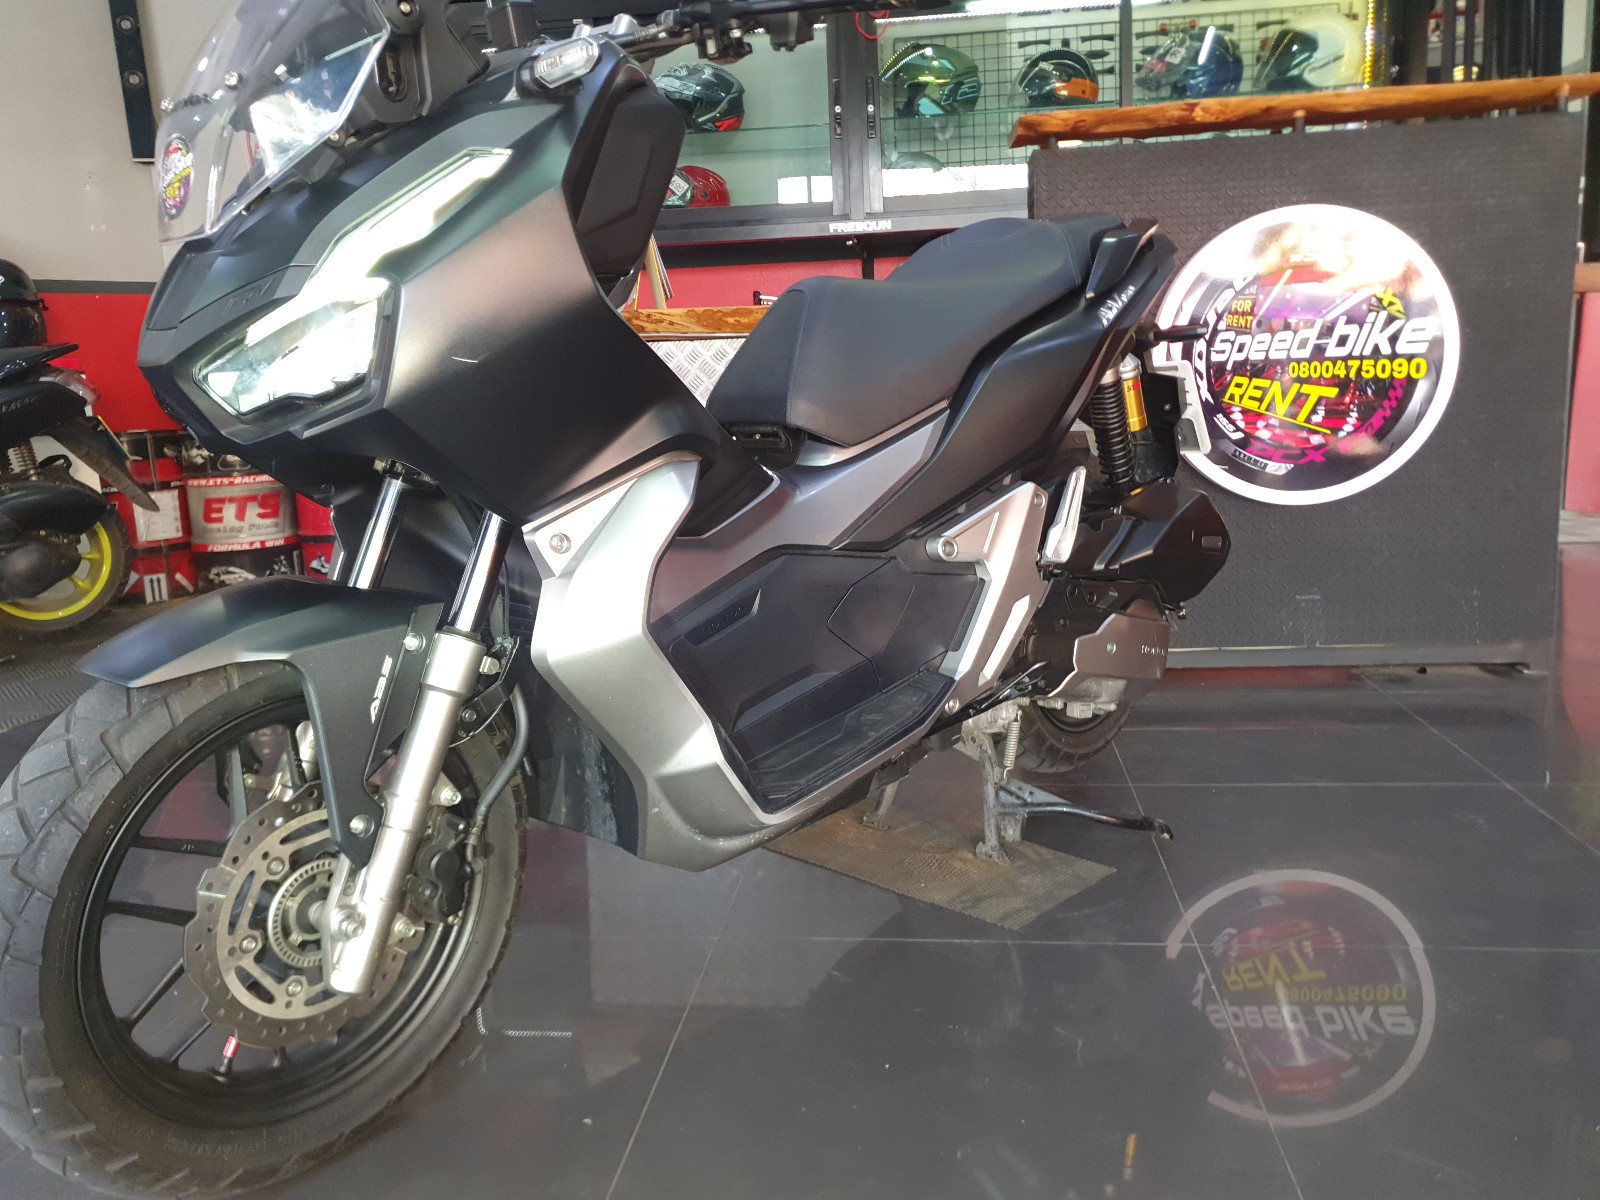 Rent motorbike Pattaya